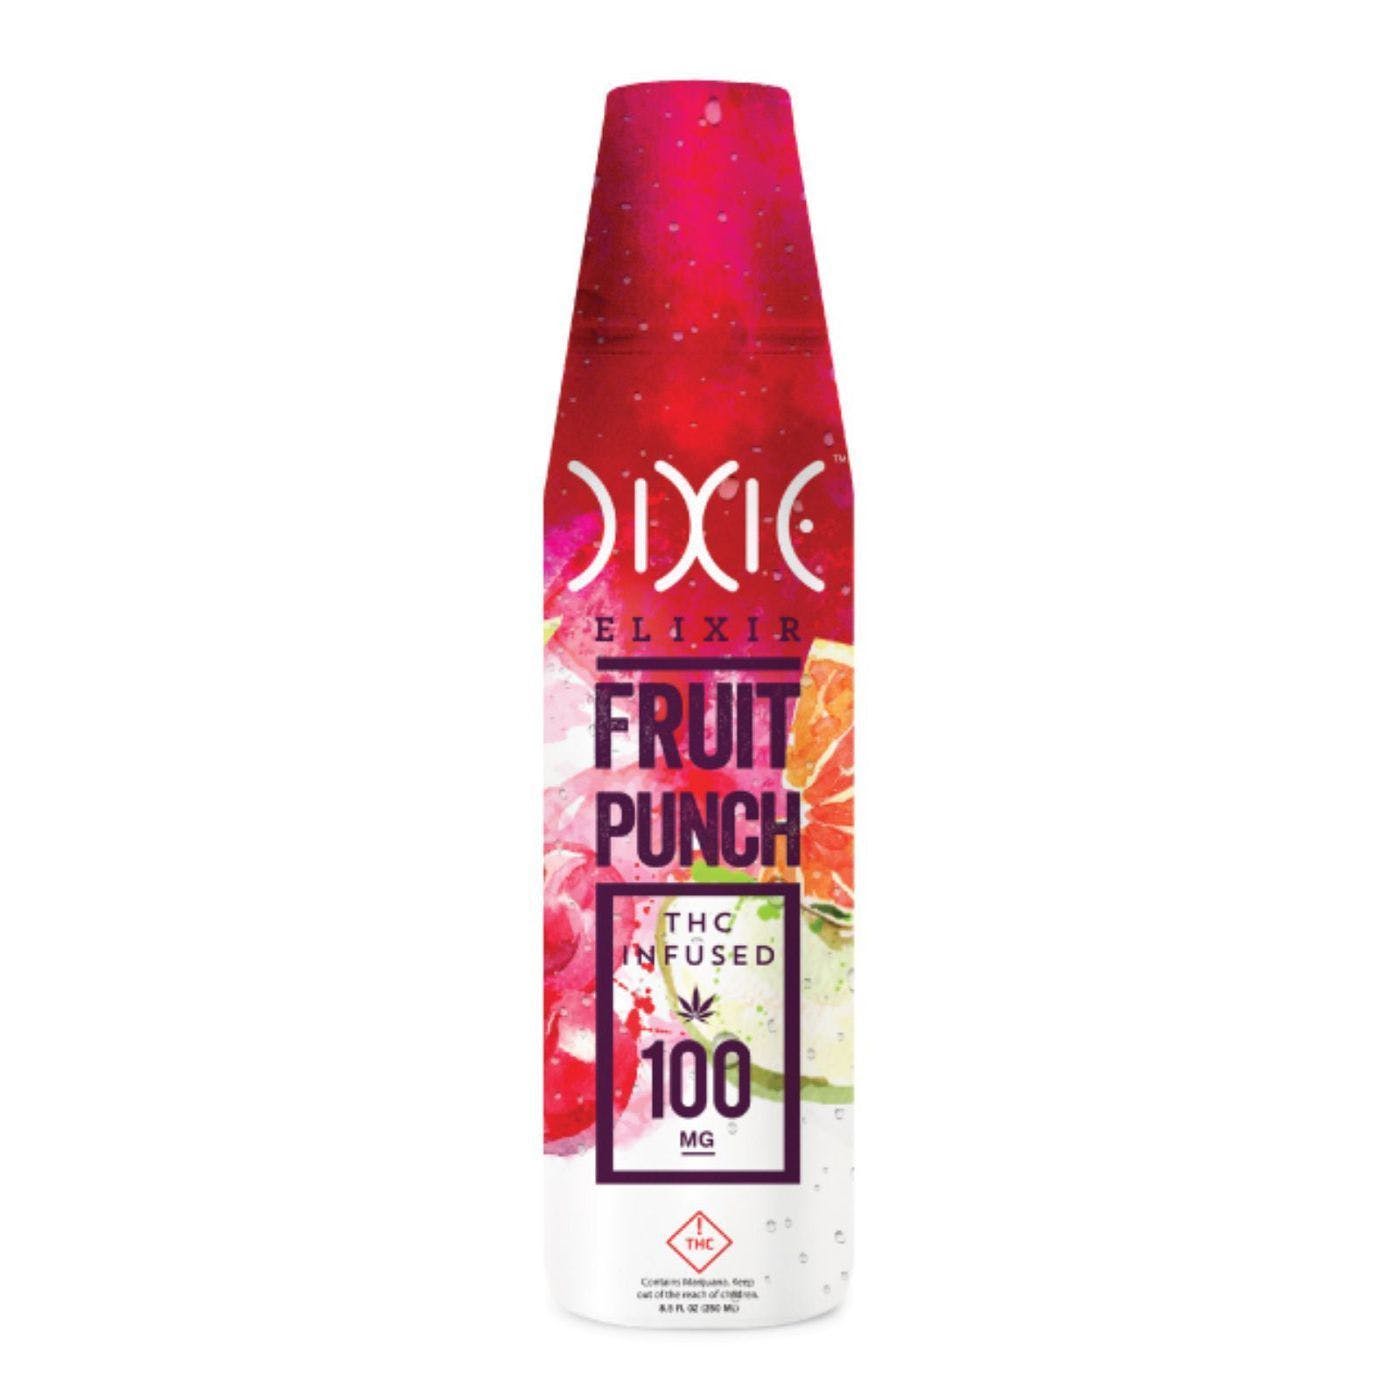 Dixie's Fruit punch lemonade